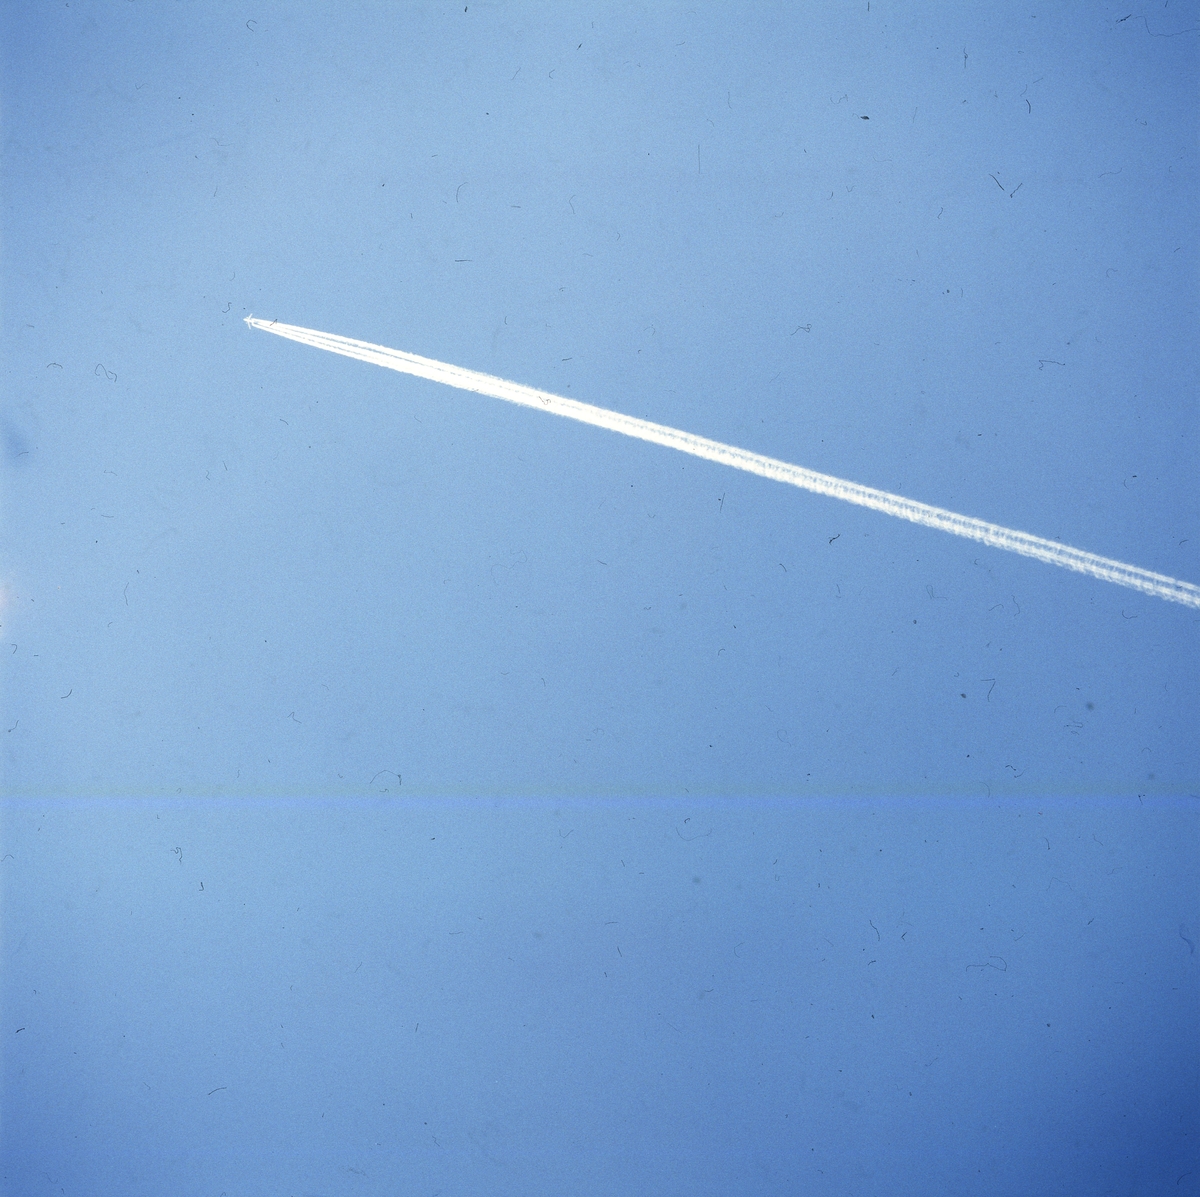 Ett flygplan lämnar ett vitt spår mot en blå himmel, Skåne 1 mars 1986.